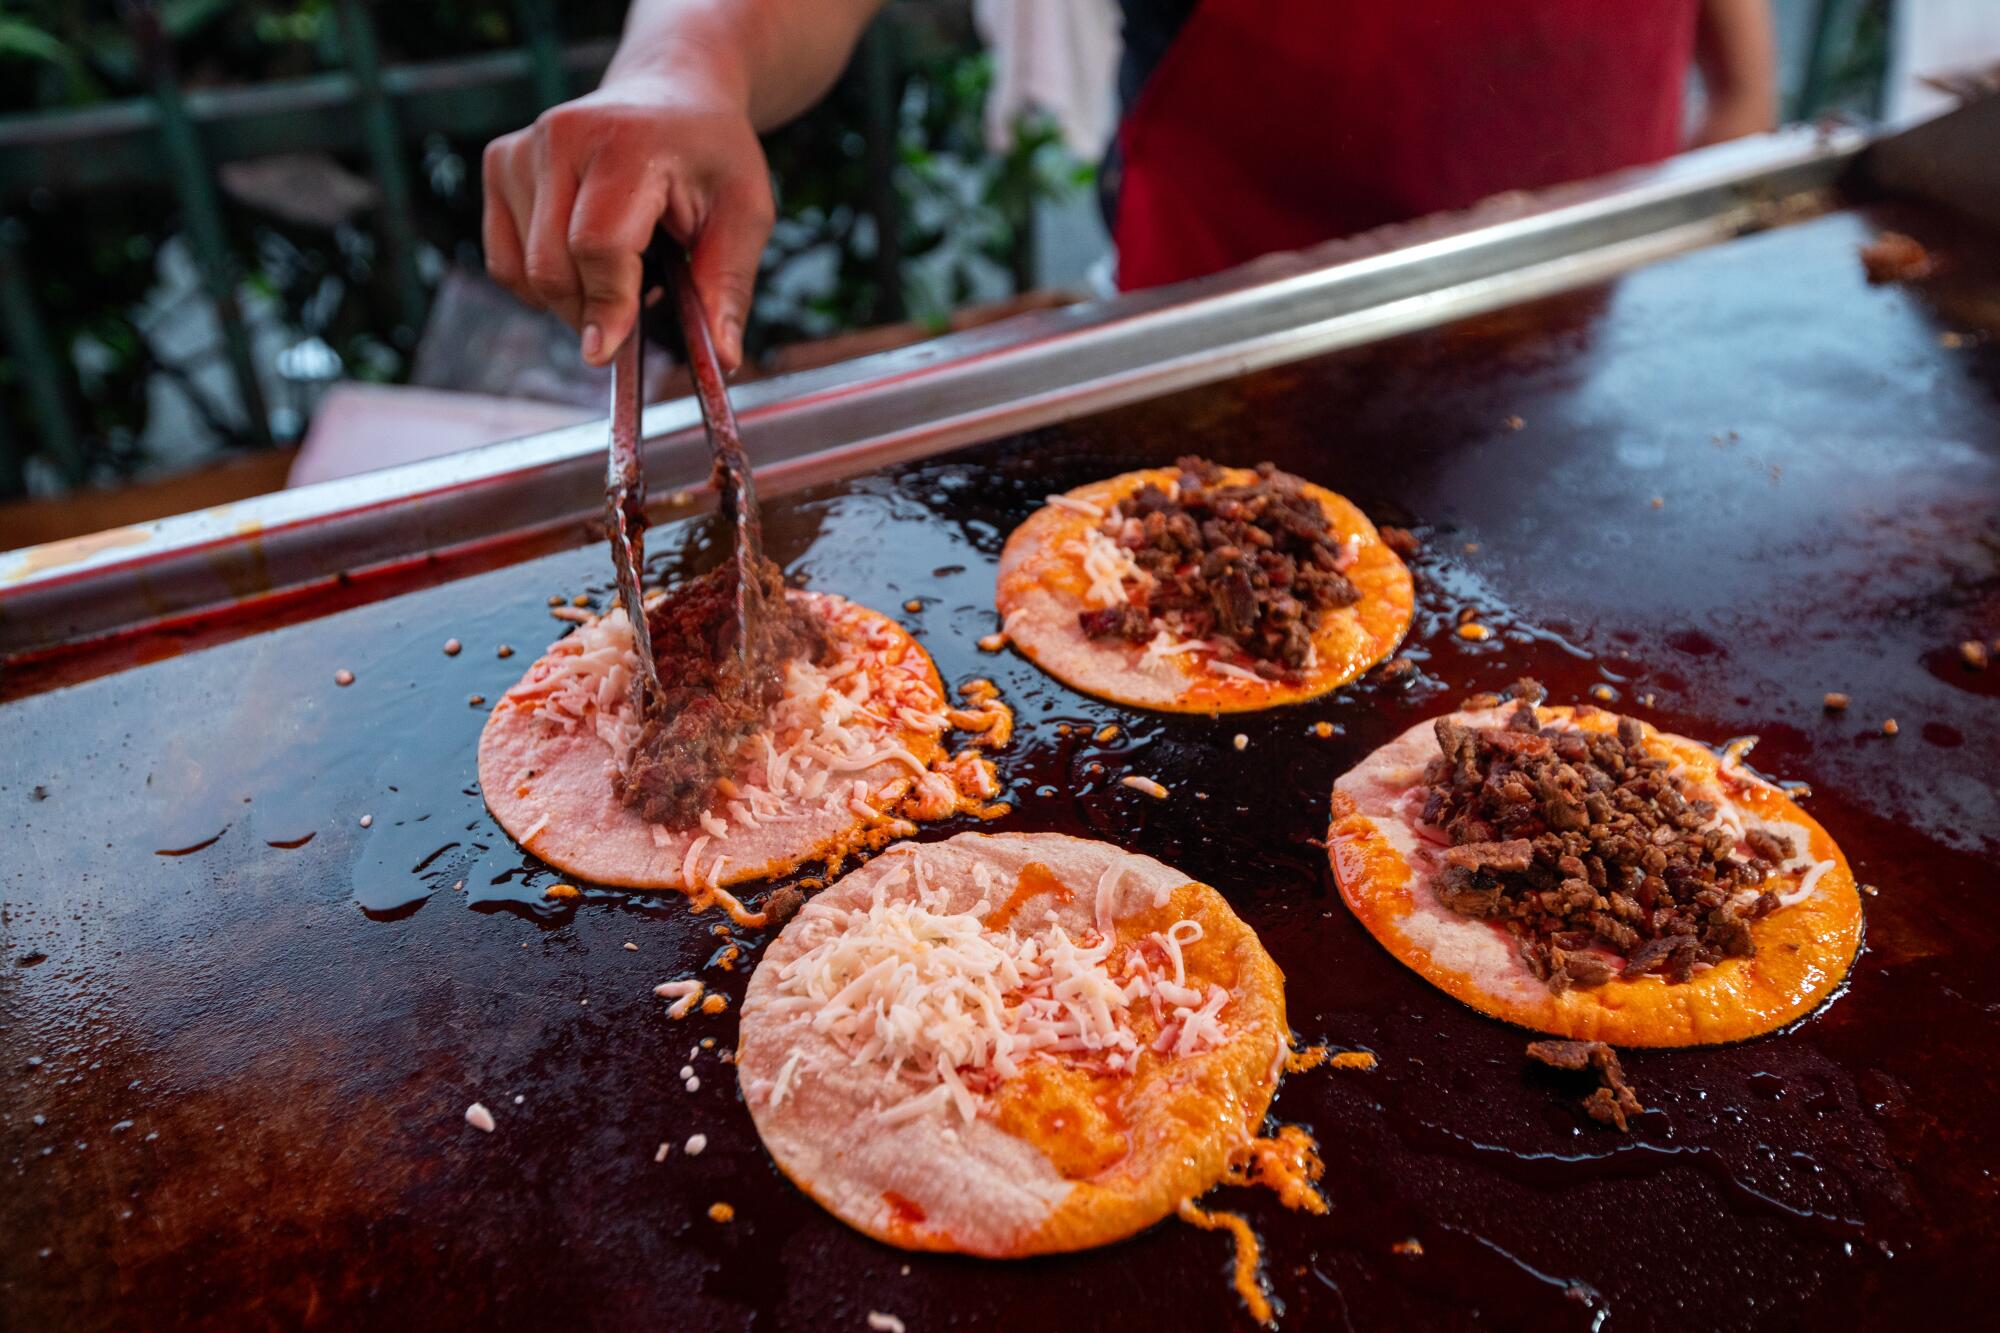 A South L.A. food vendor prepares tacos.